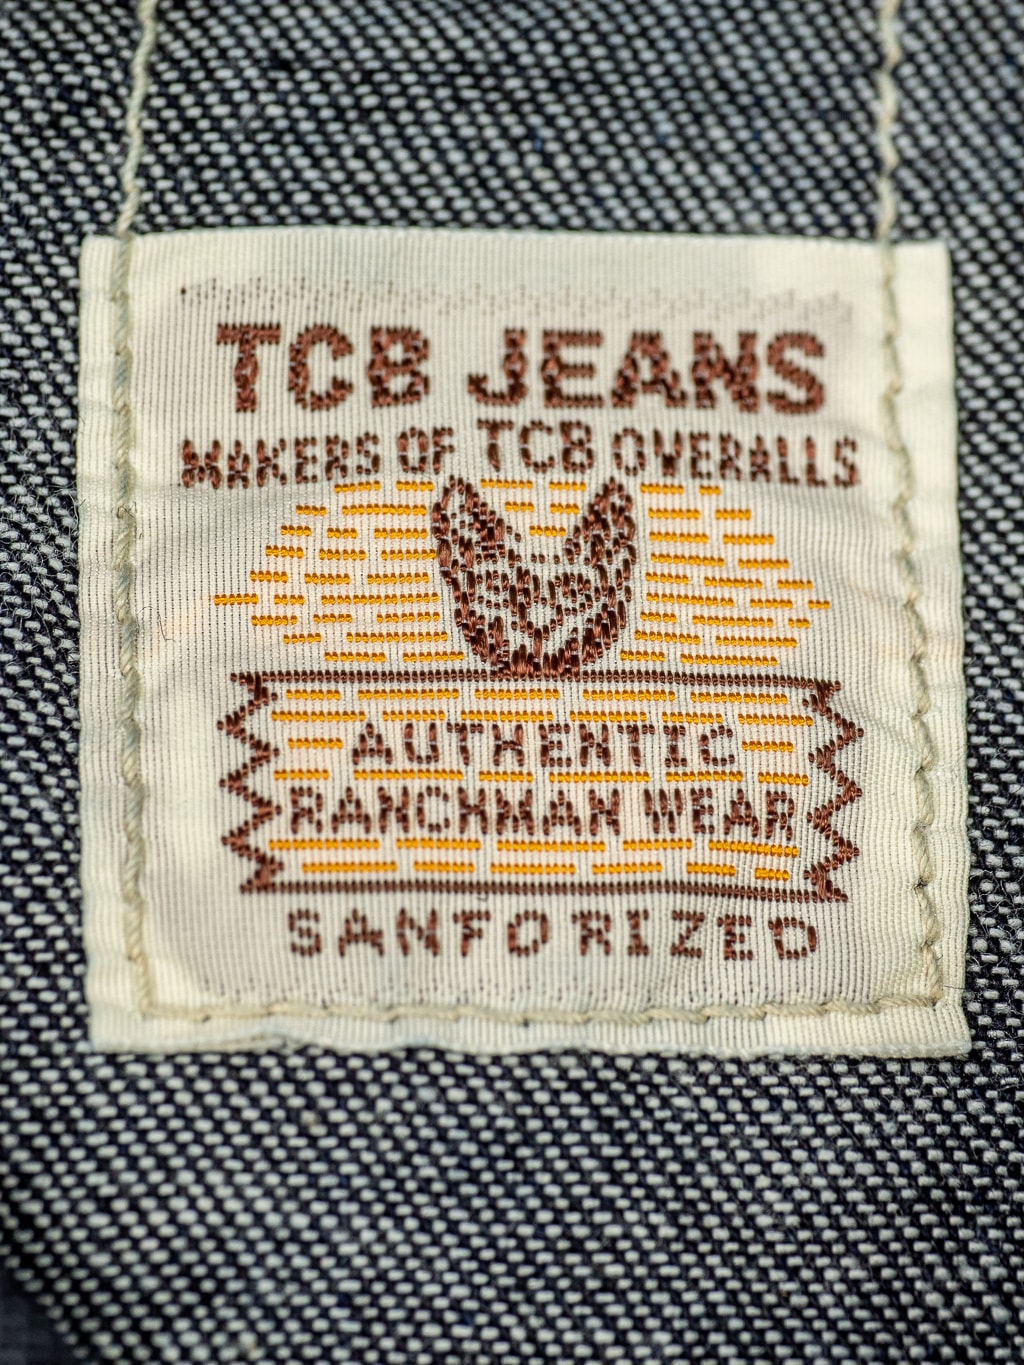 tcb dude ranch shirt denim western cut interior label